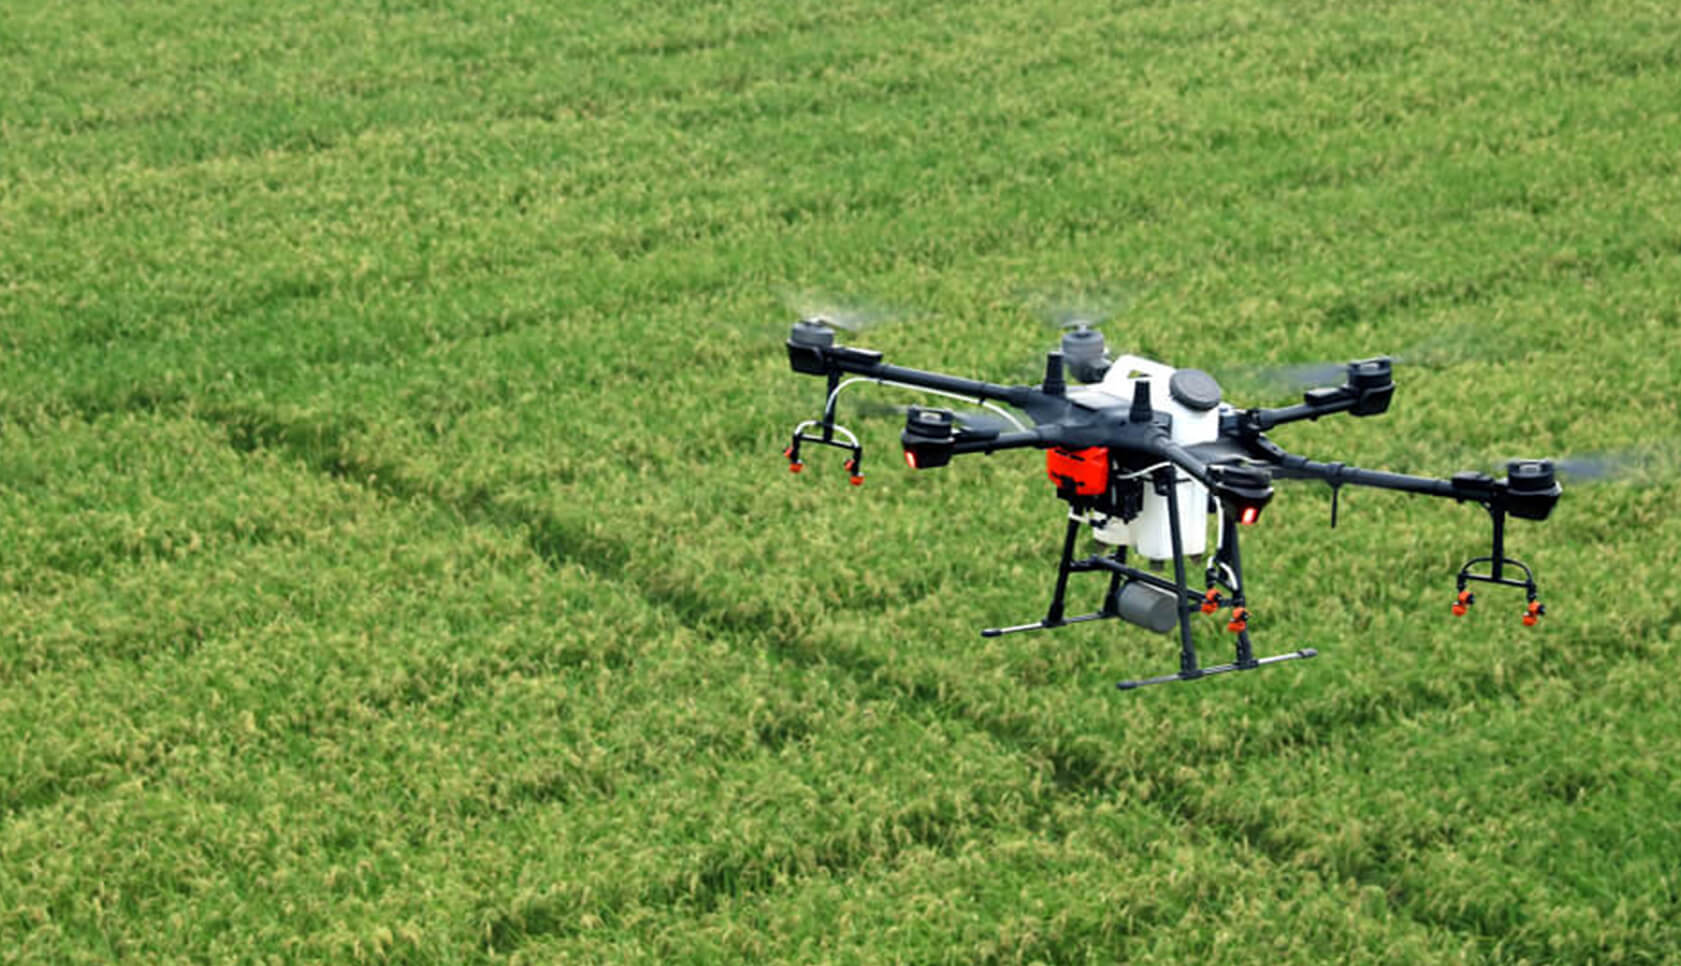 Los equipos de DJI como el Agras T16 ofrecen una solución muy potente para la aplicación de productos fitosanitarios con drones